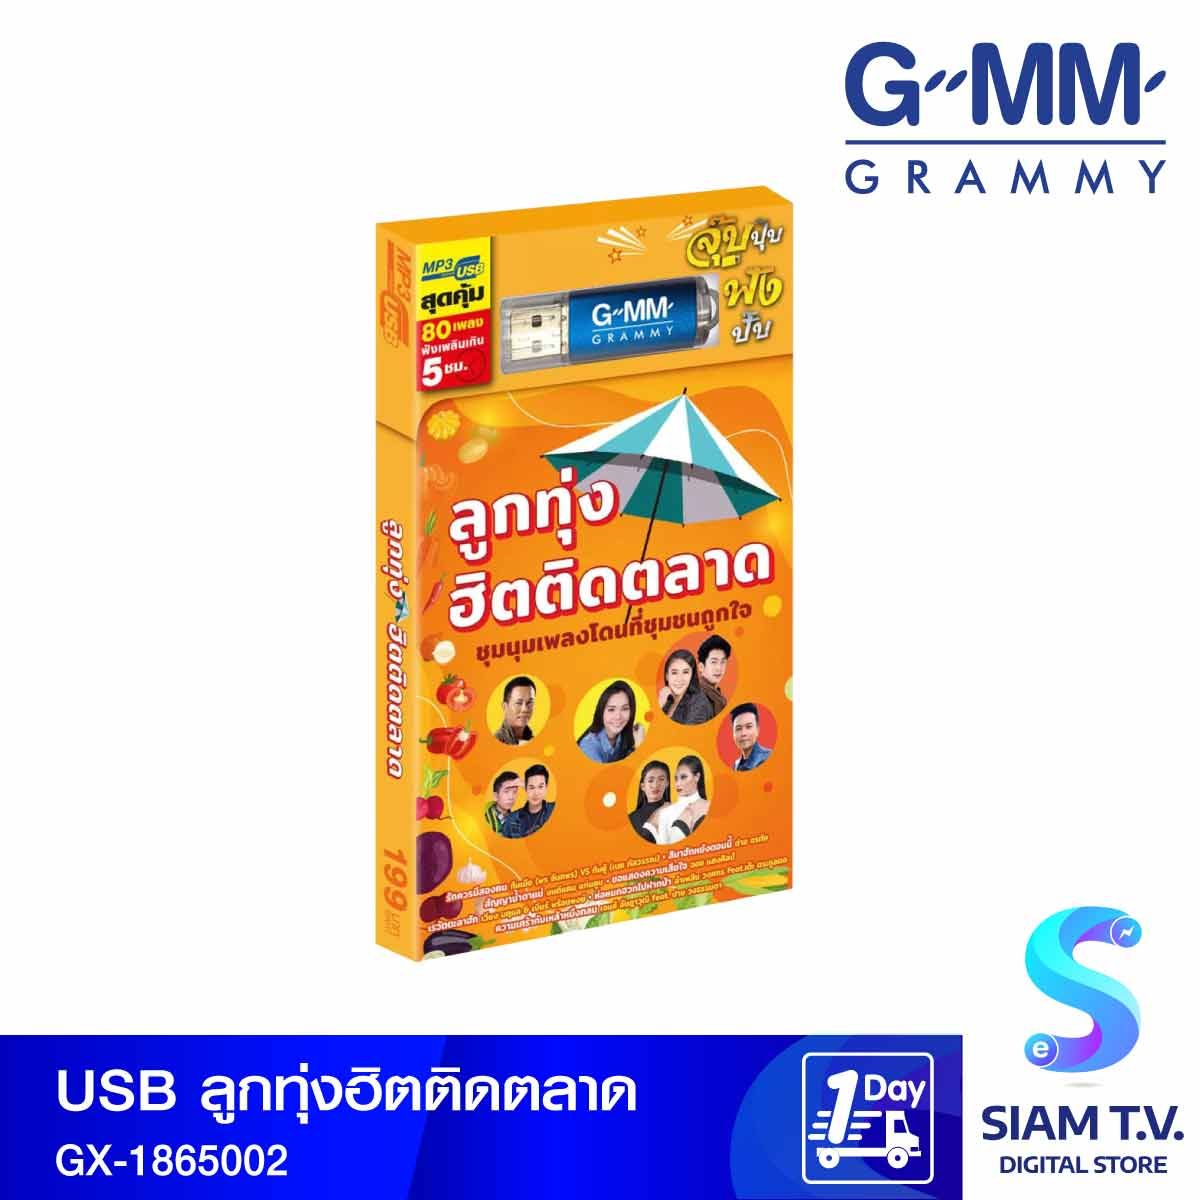 GMM GRAMMY USB เพลงแกรมมี่ลูกทุ่งฮิตติดตลาด GX-1865002